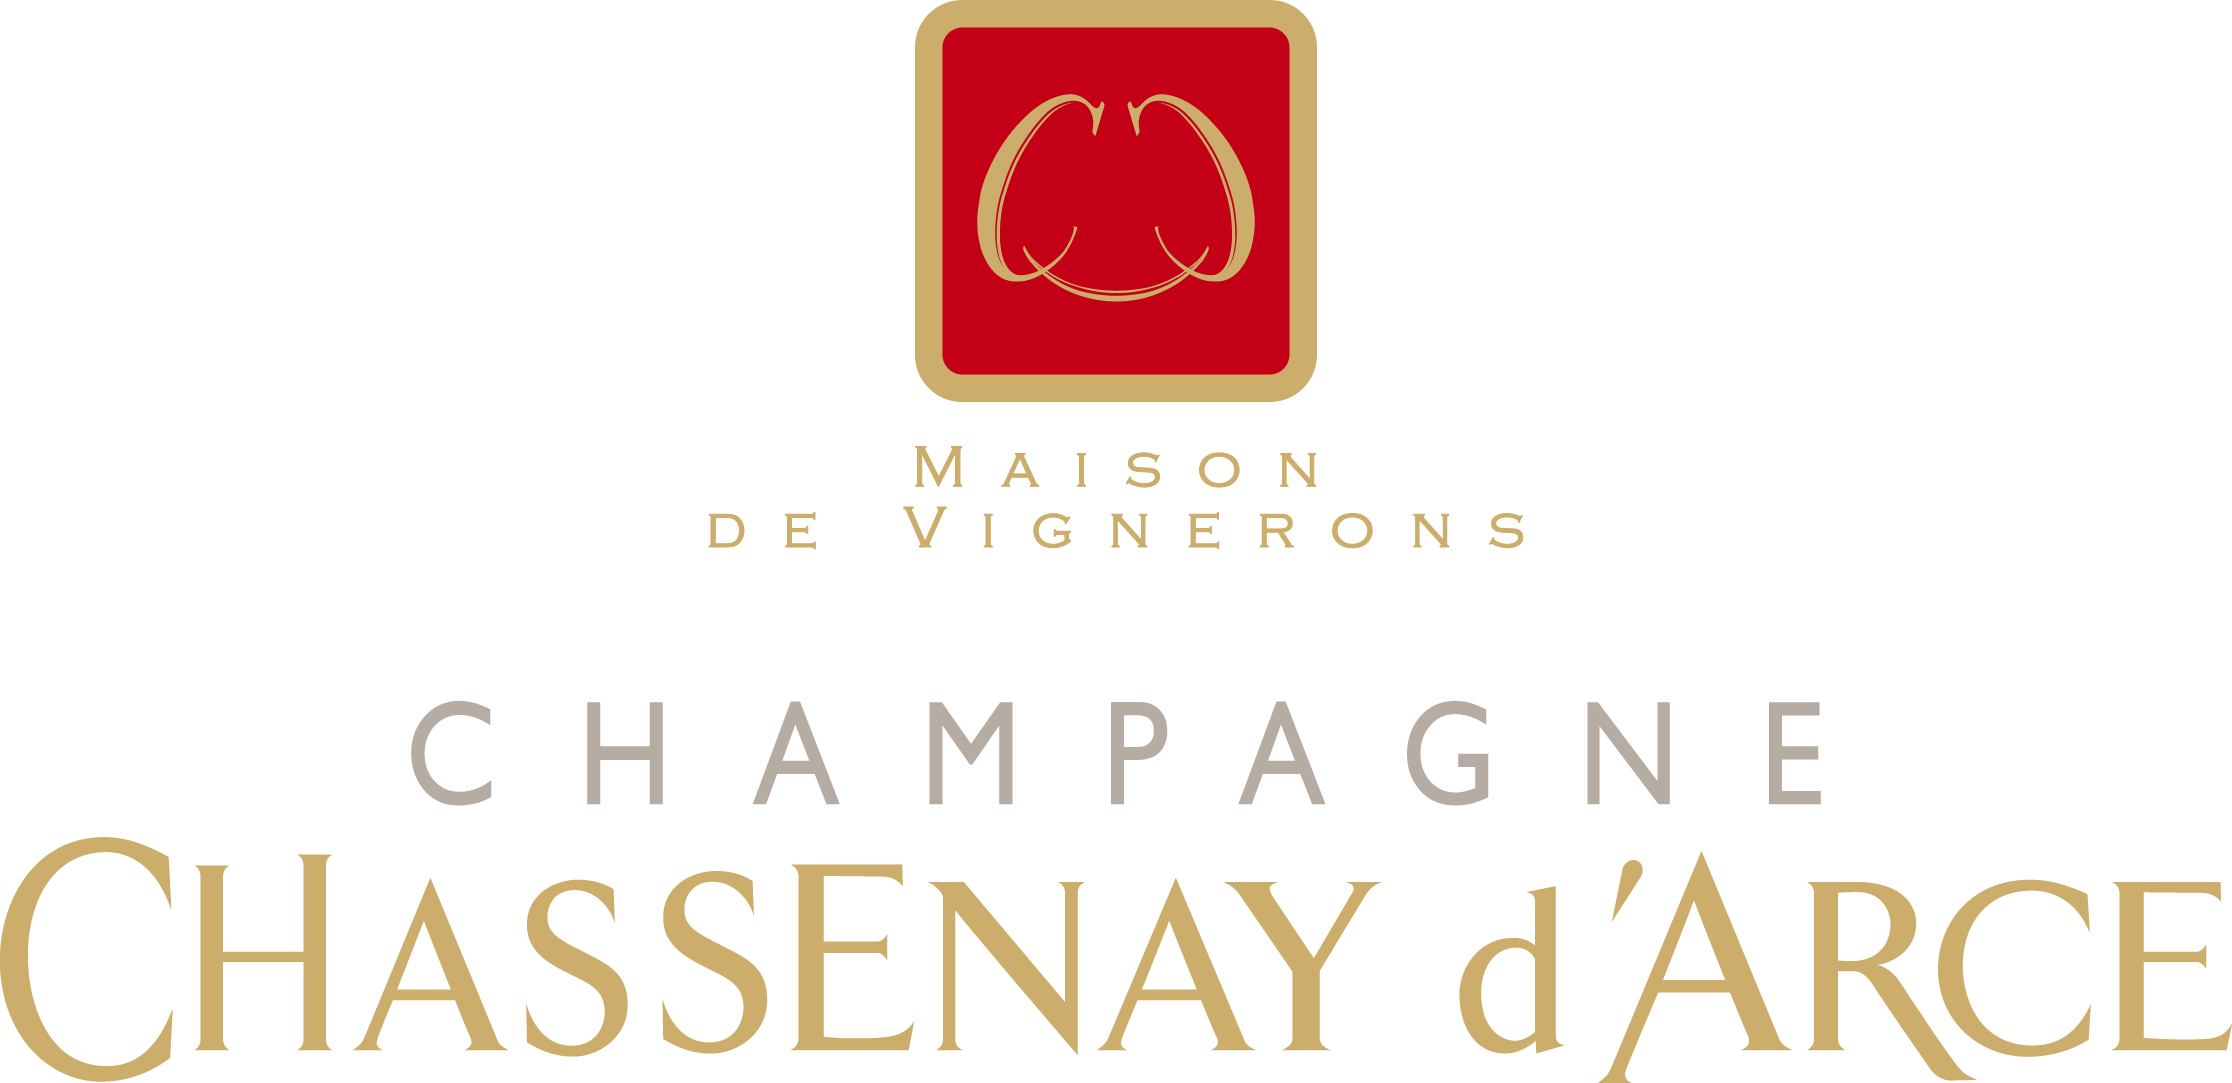 夏塞讷·达赛香槟Champagne Chassenay d'Arce